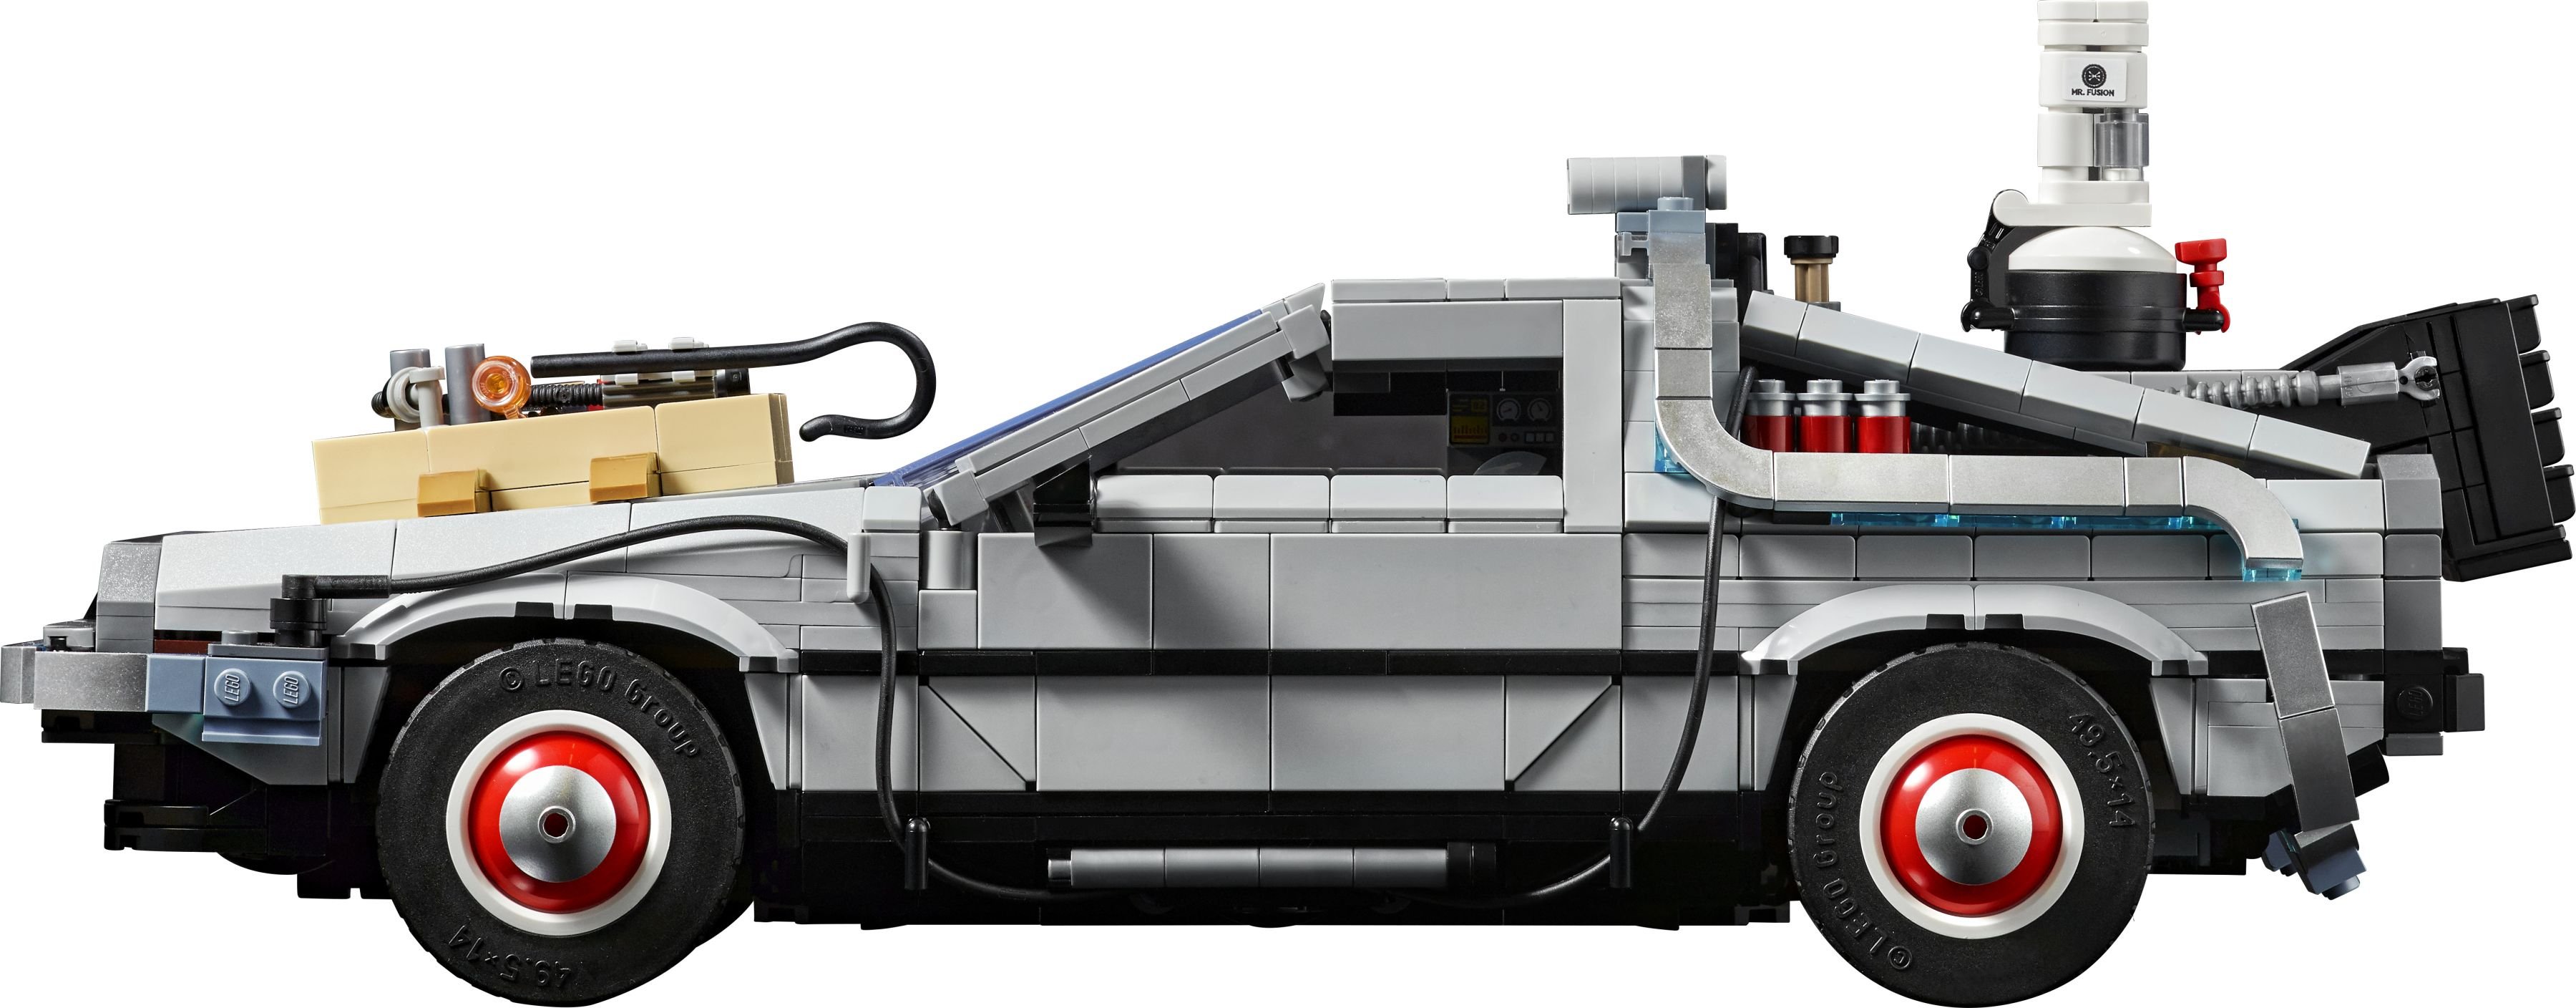 LEGO Advanced Models 10300 Die Zeitmaschine aus Zurück in die Zukunft LEGO_10300_alt4.jpg